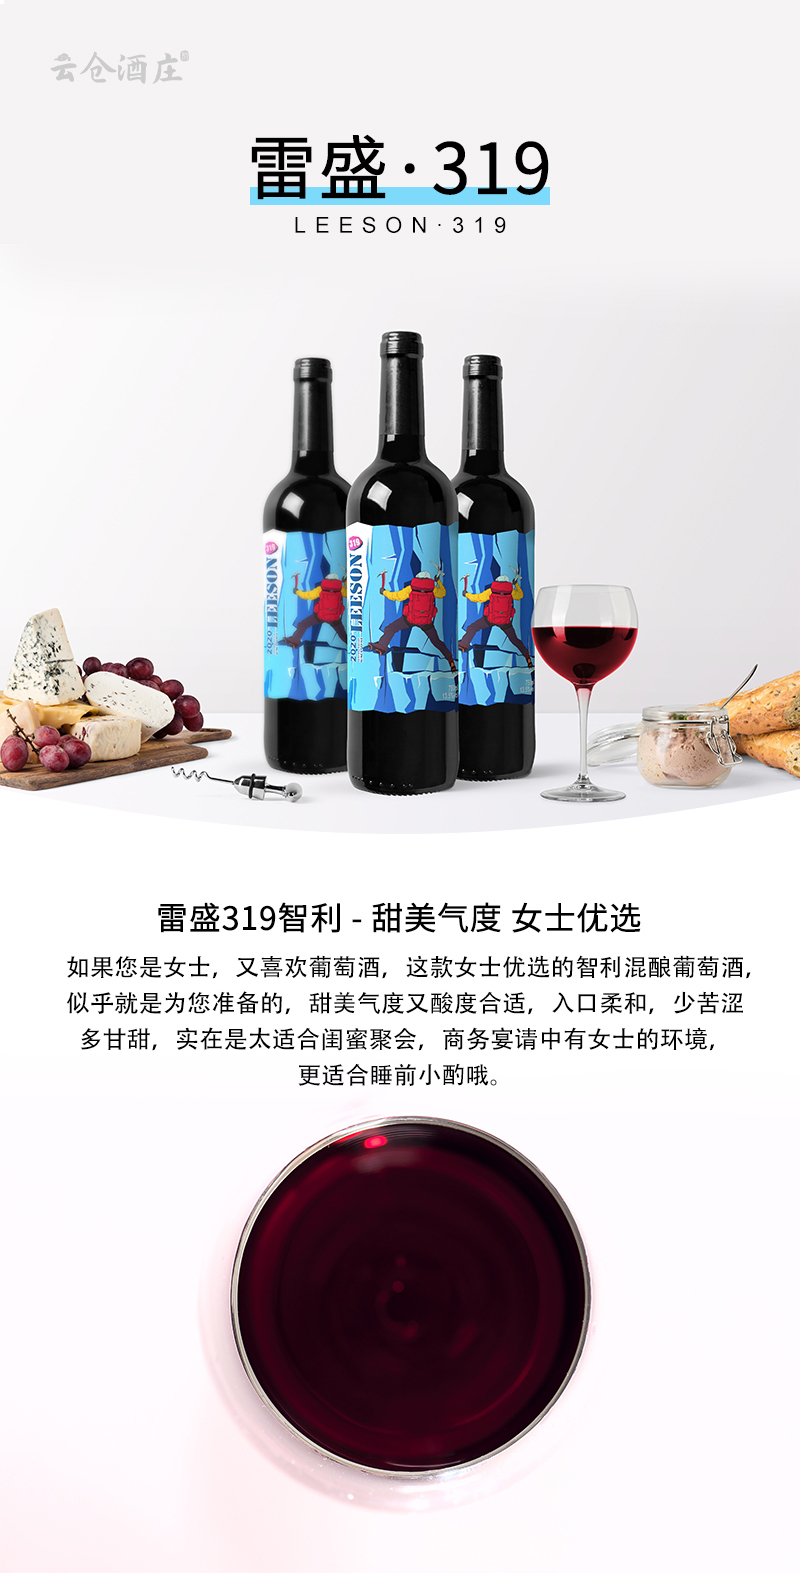 雷盛319智利原瓶进口干红葡萄酒(图1)